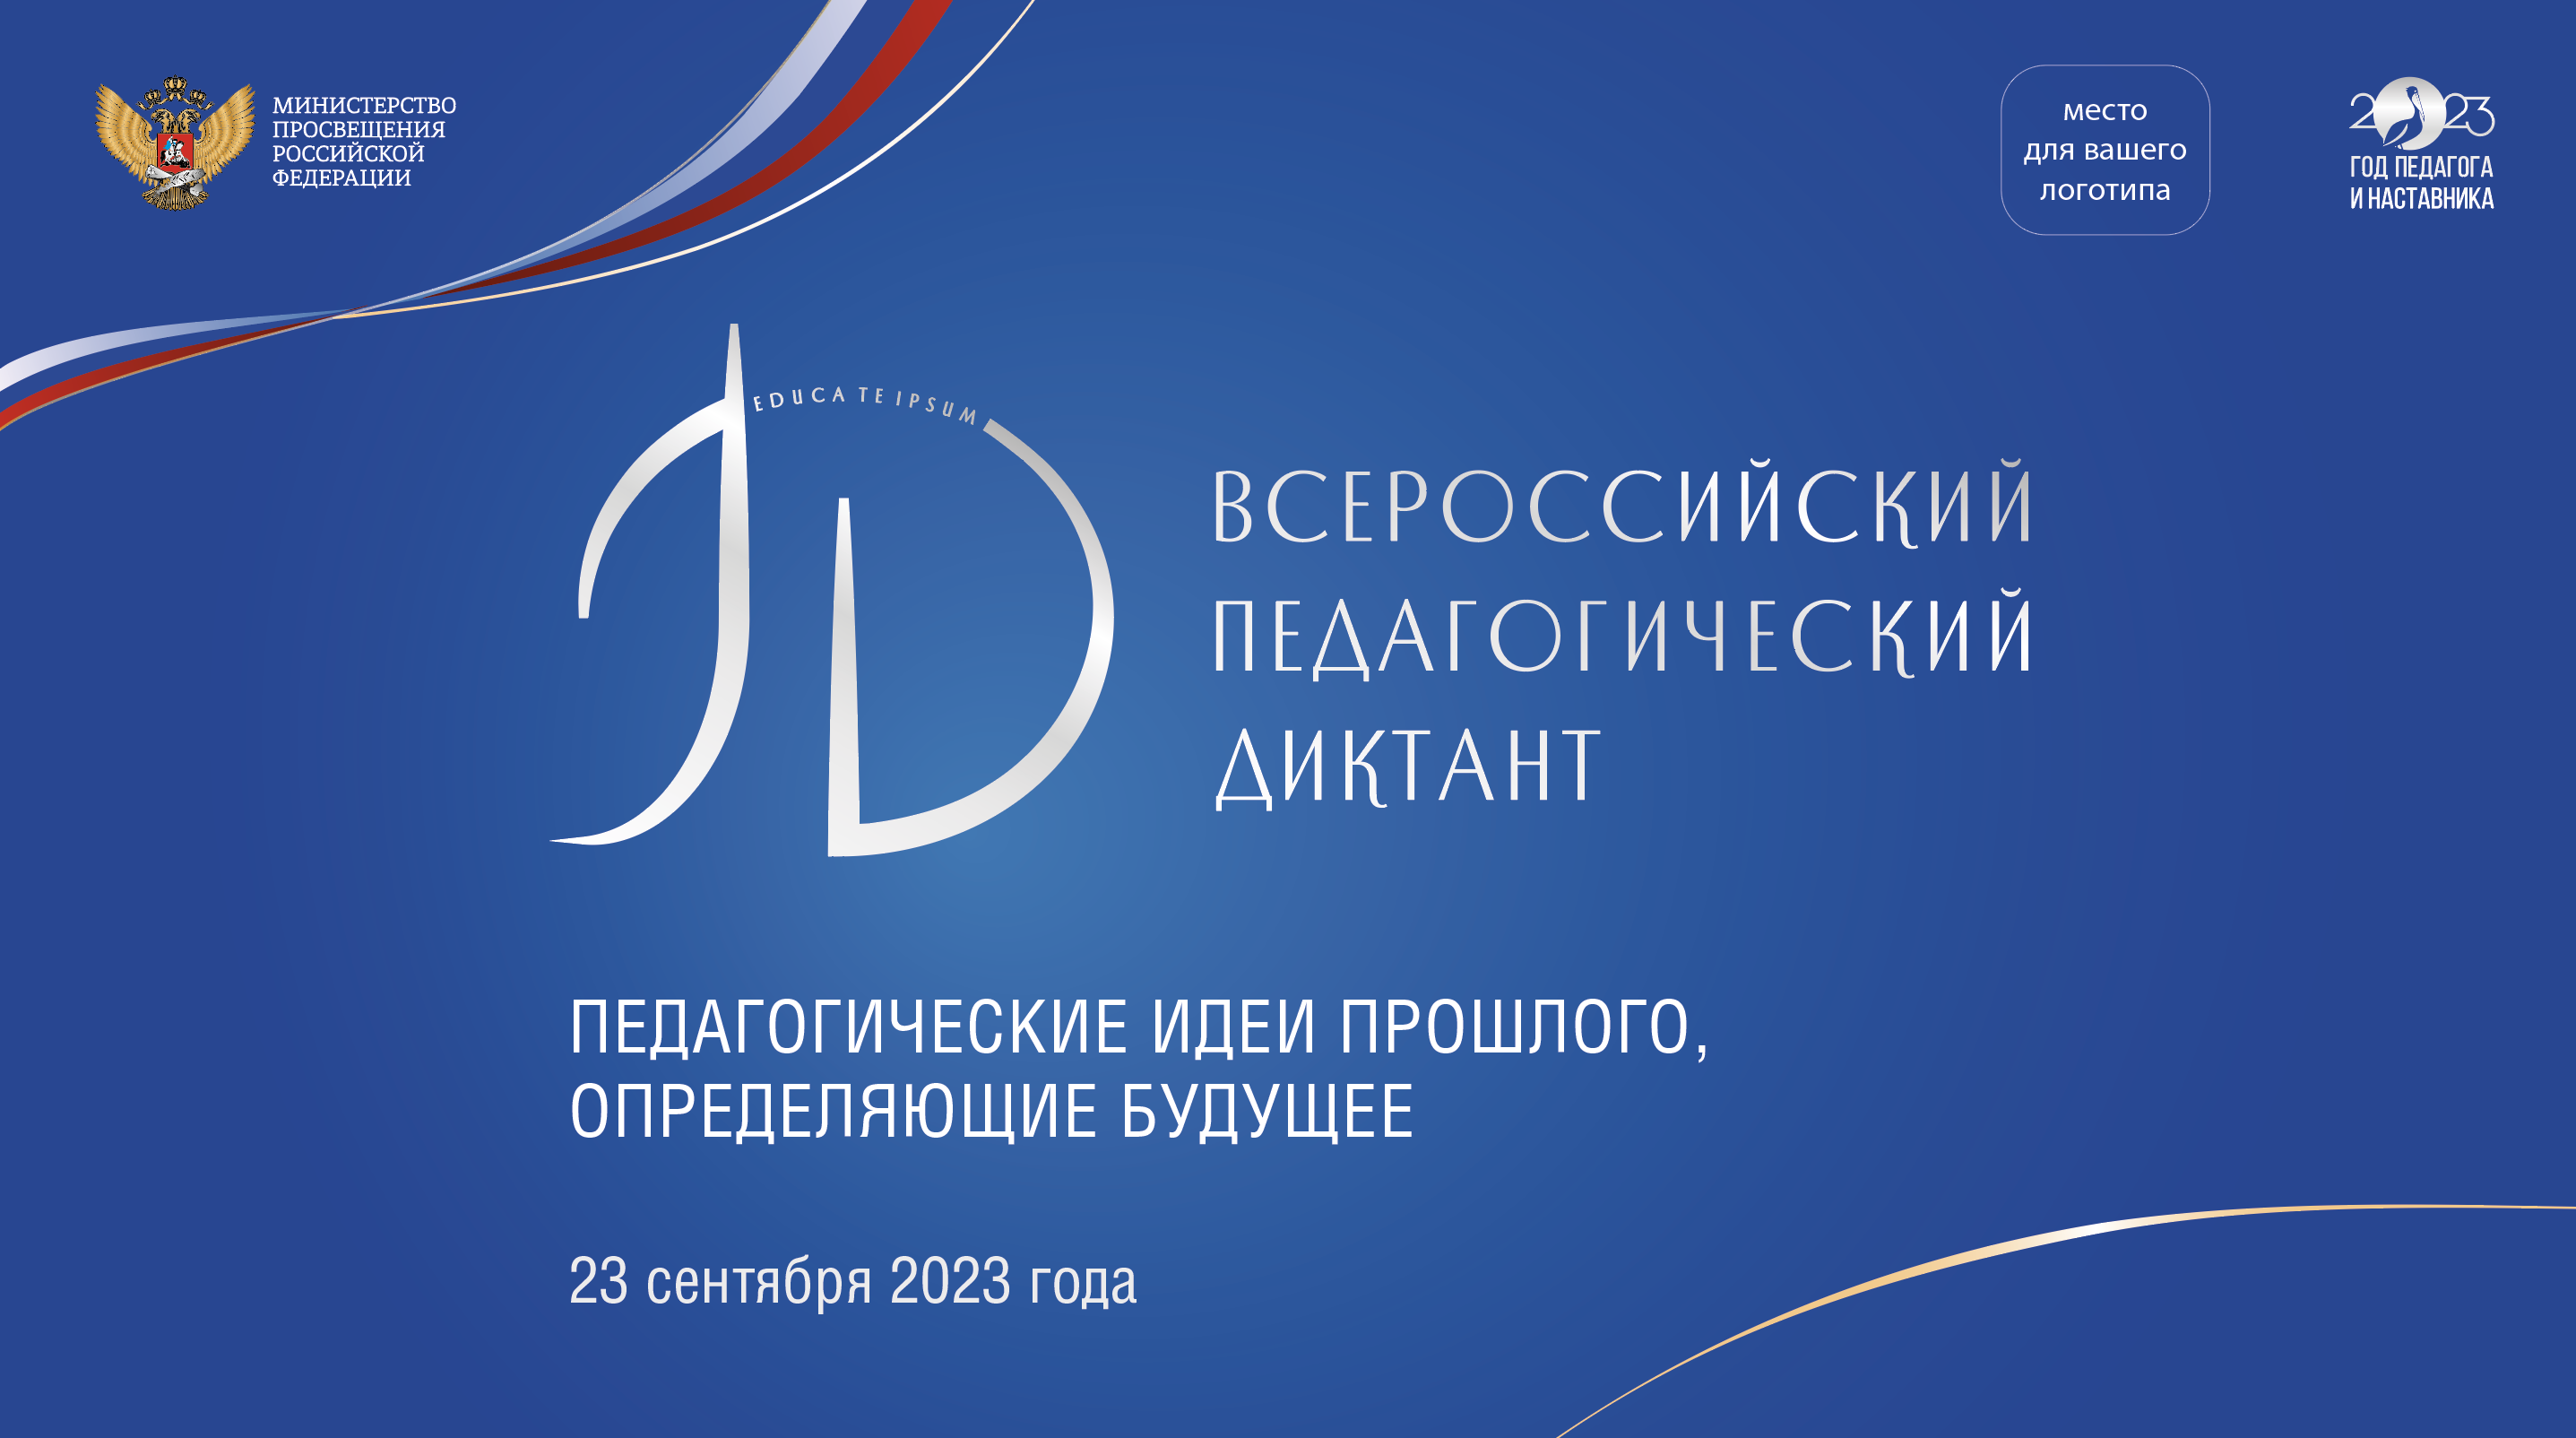 Всероссийская акция «Педагогический диктант» пройдет 23 сентября 2023 23 сентября 2023 года пройдет Всероссийская акция «Педагогический диктант»..